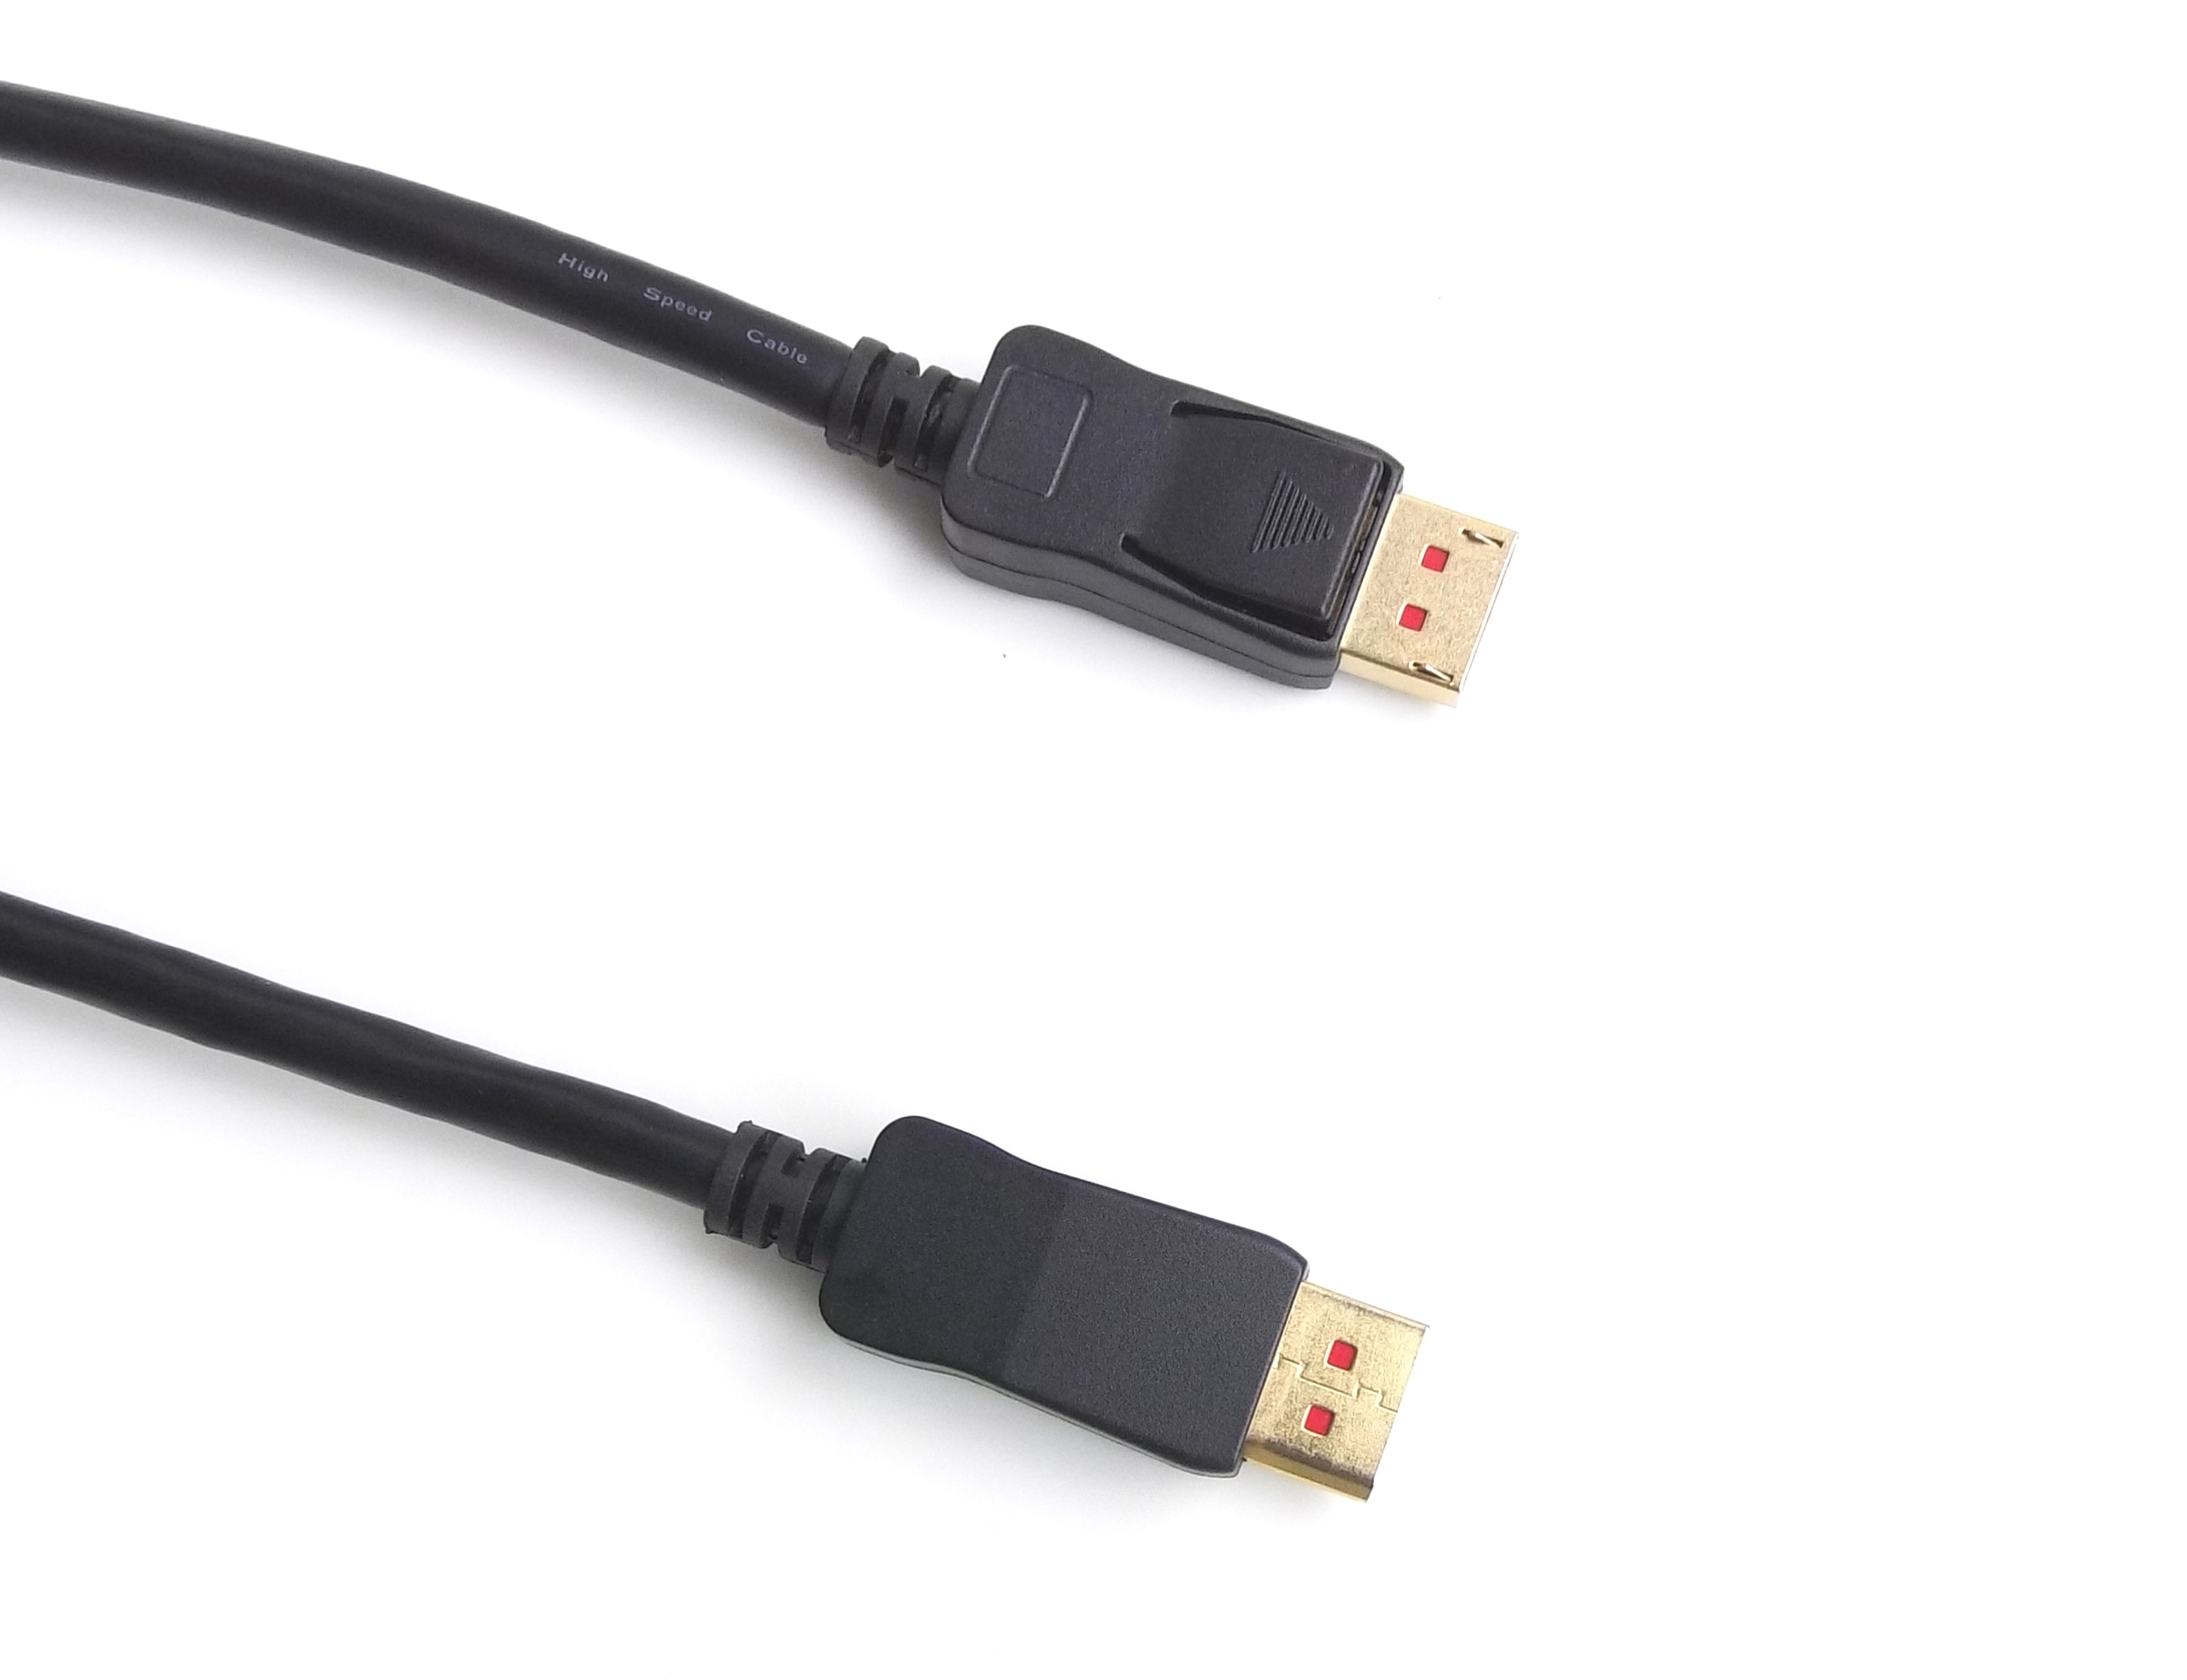  DisplayPort 1.4 DP Cable Support 8K 60HZ 4K 120HZ Resolution